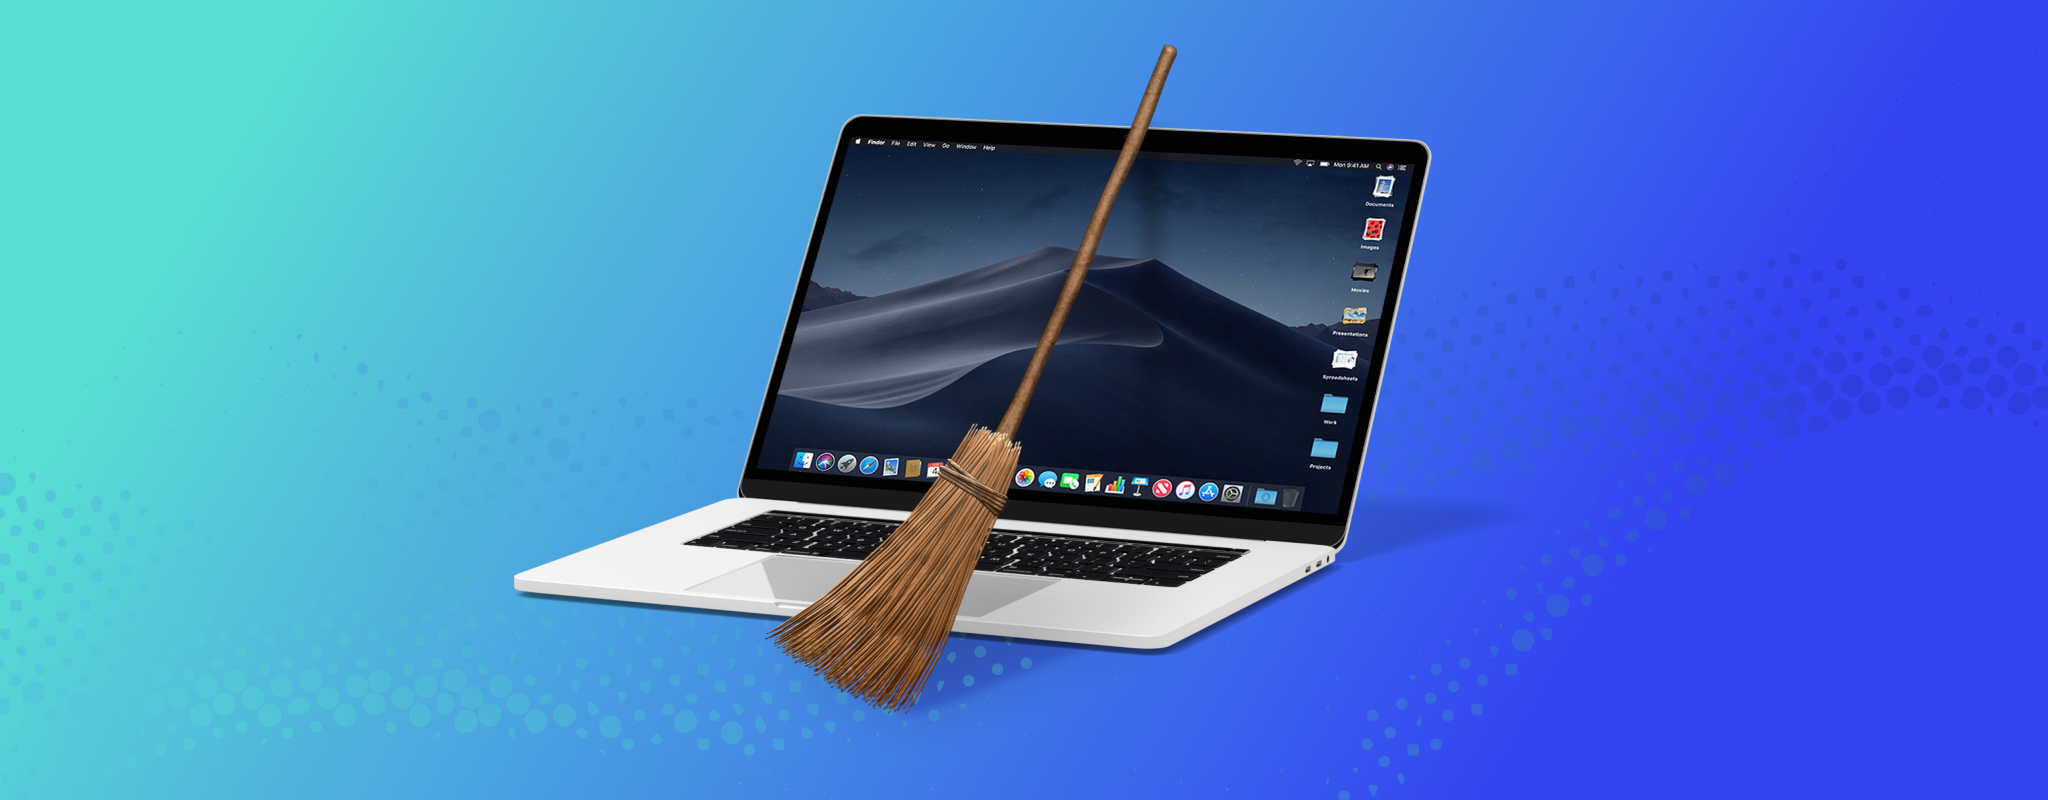 free mac registry cleaner